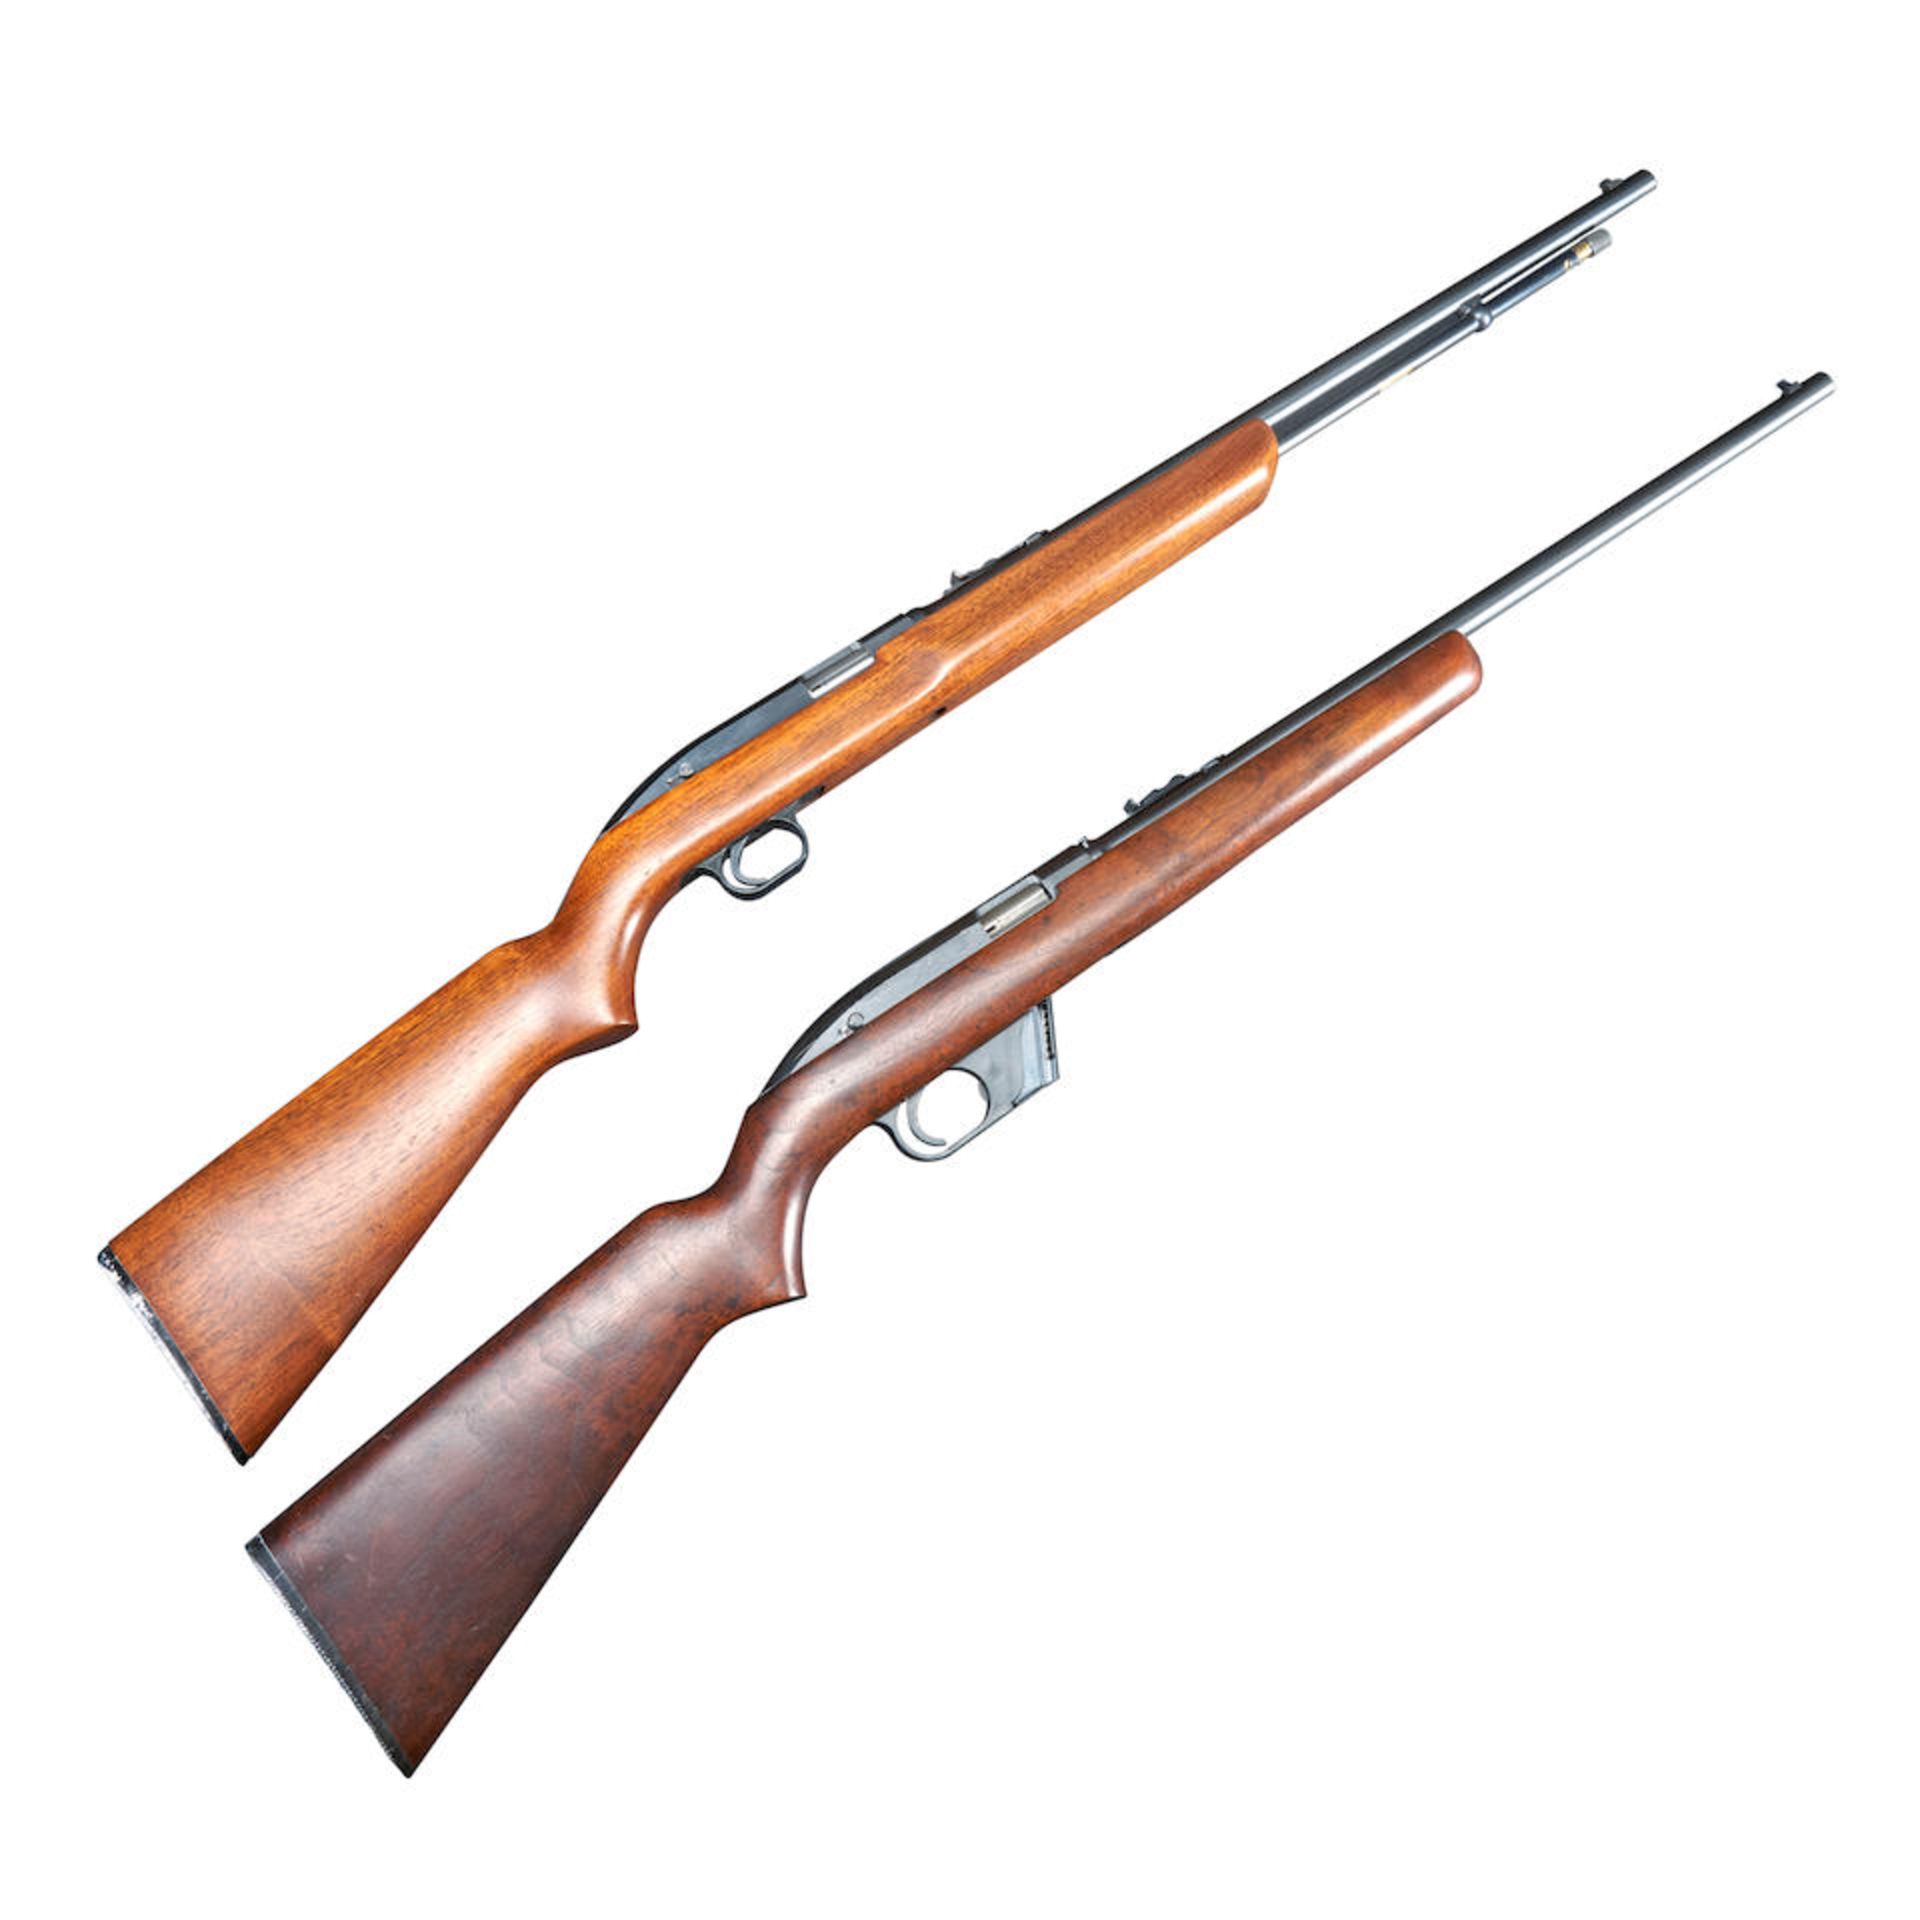 Two Winchester Model 77 Semi Automatic Rifles. Curio or Relic firearm